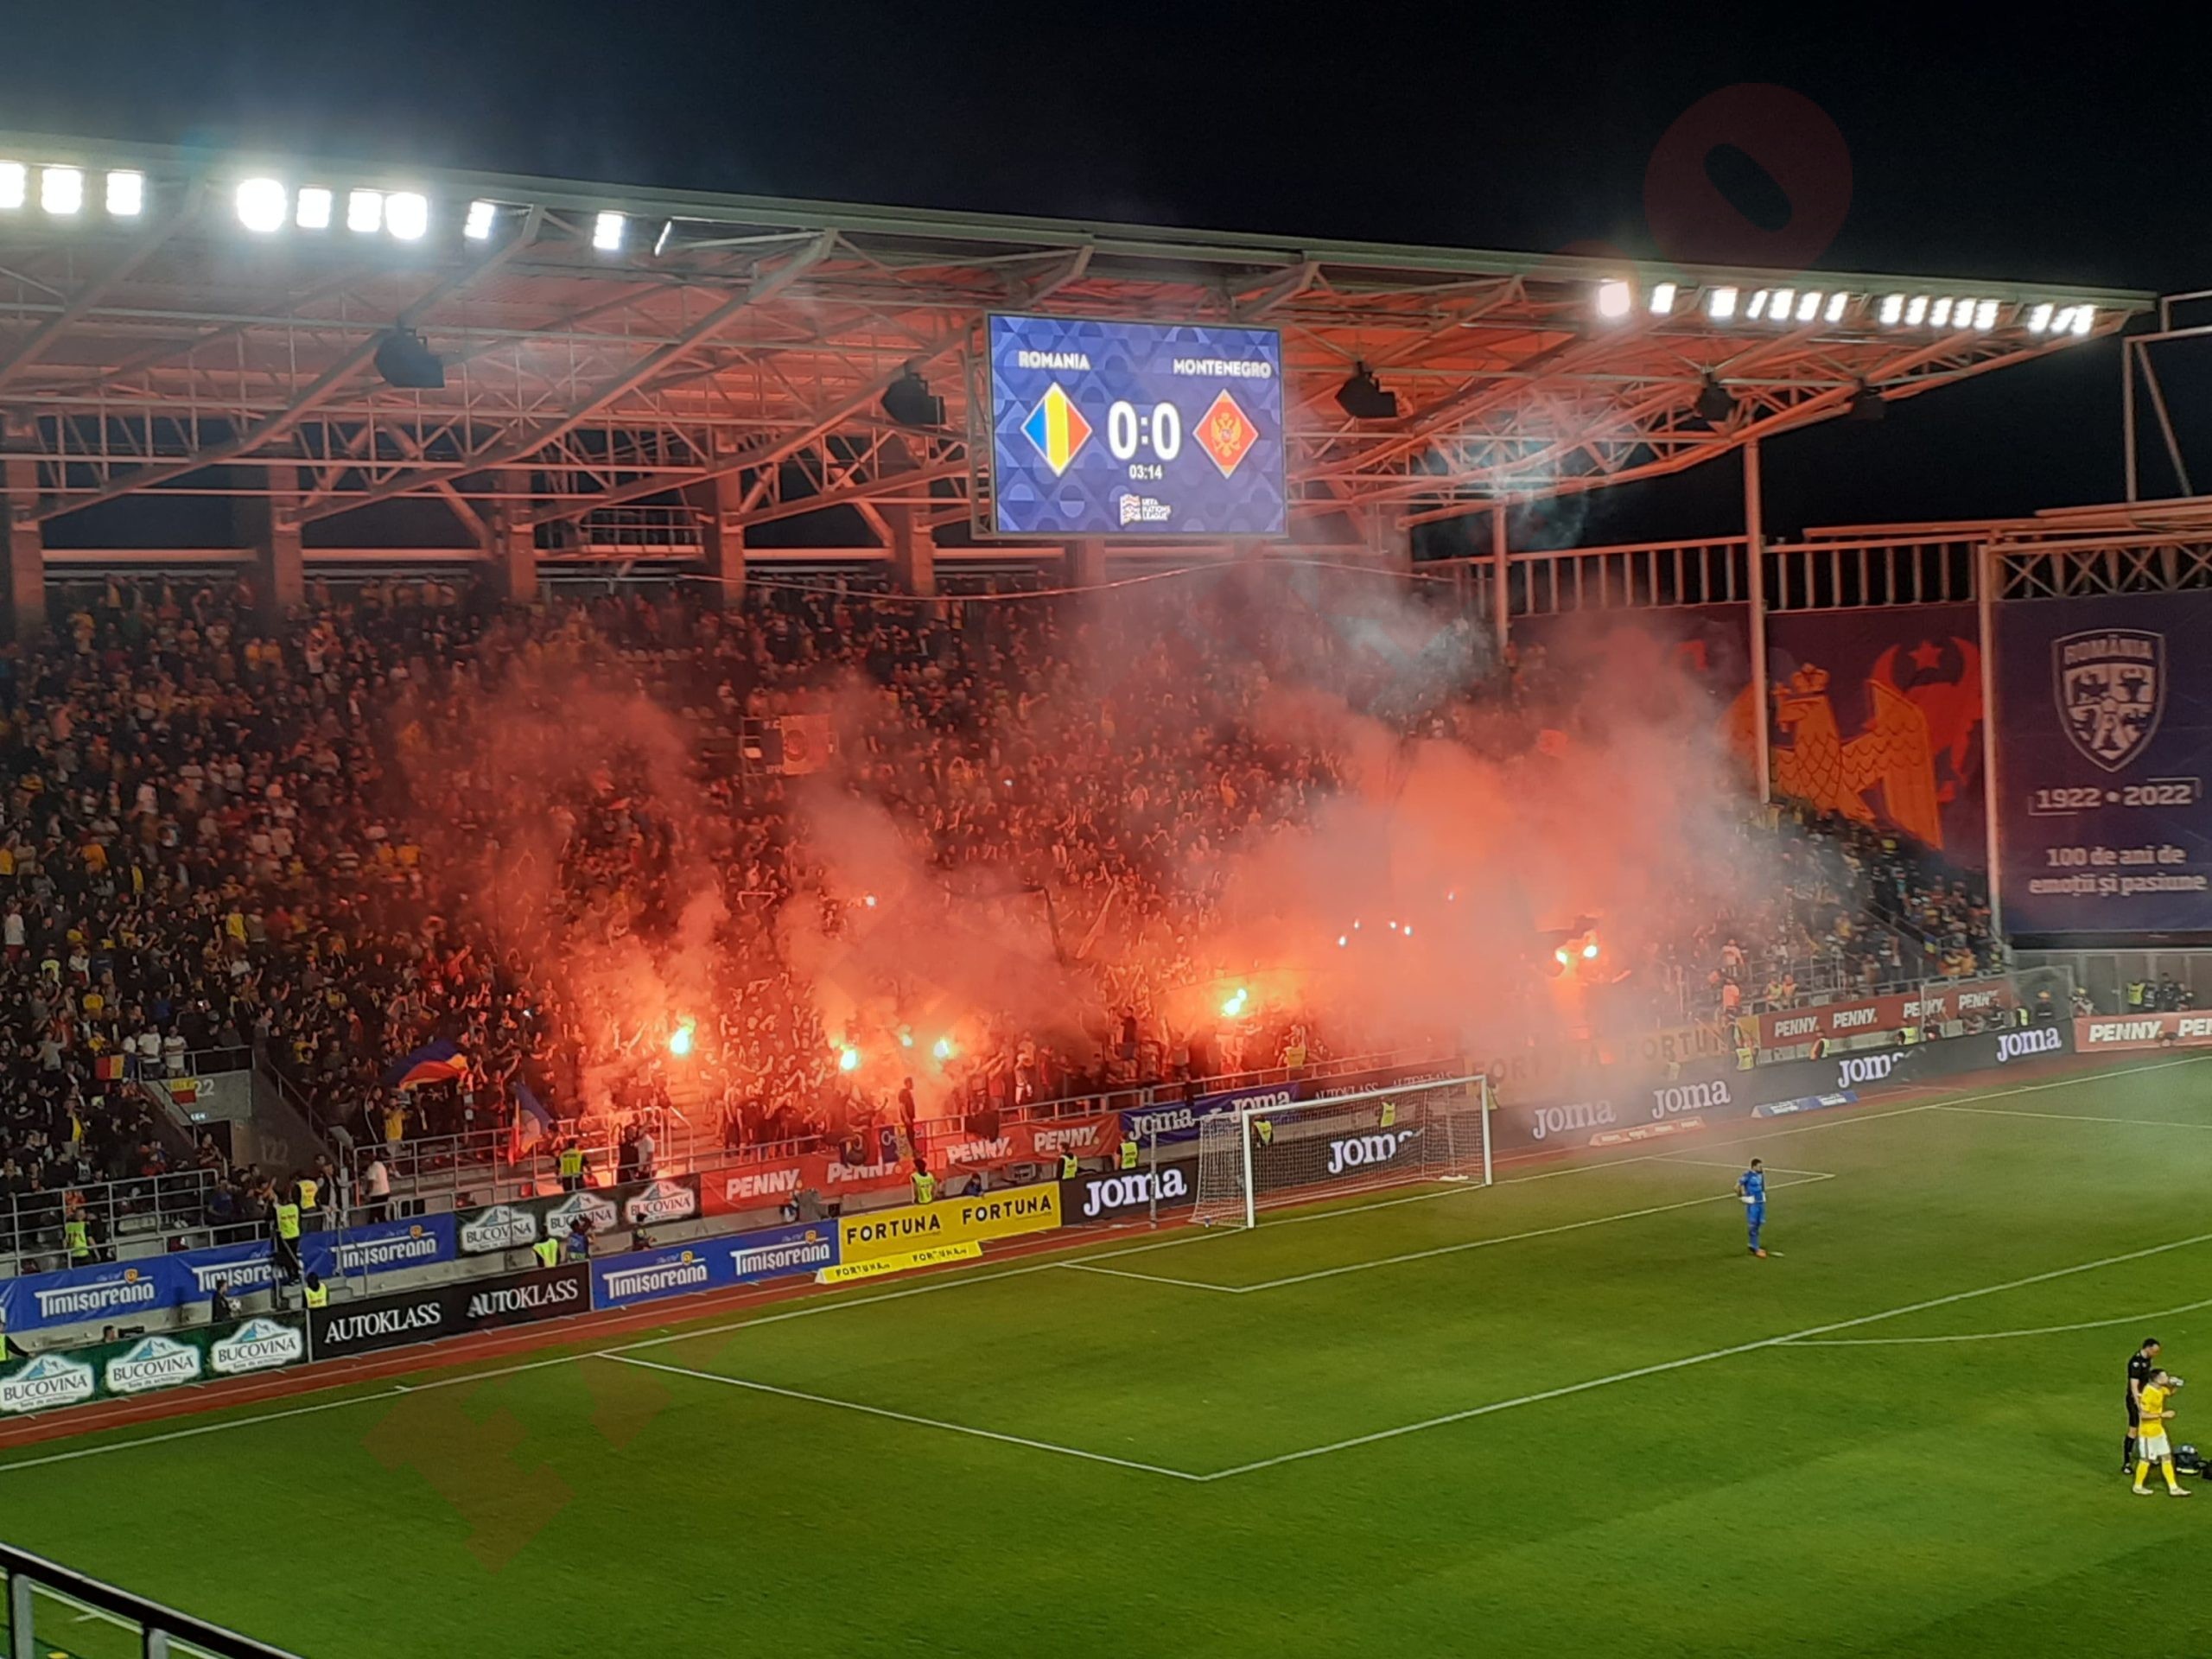 Imagine de la spectacolul pirotehnic de pe stadionul Giulești